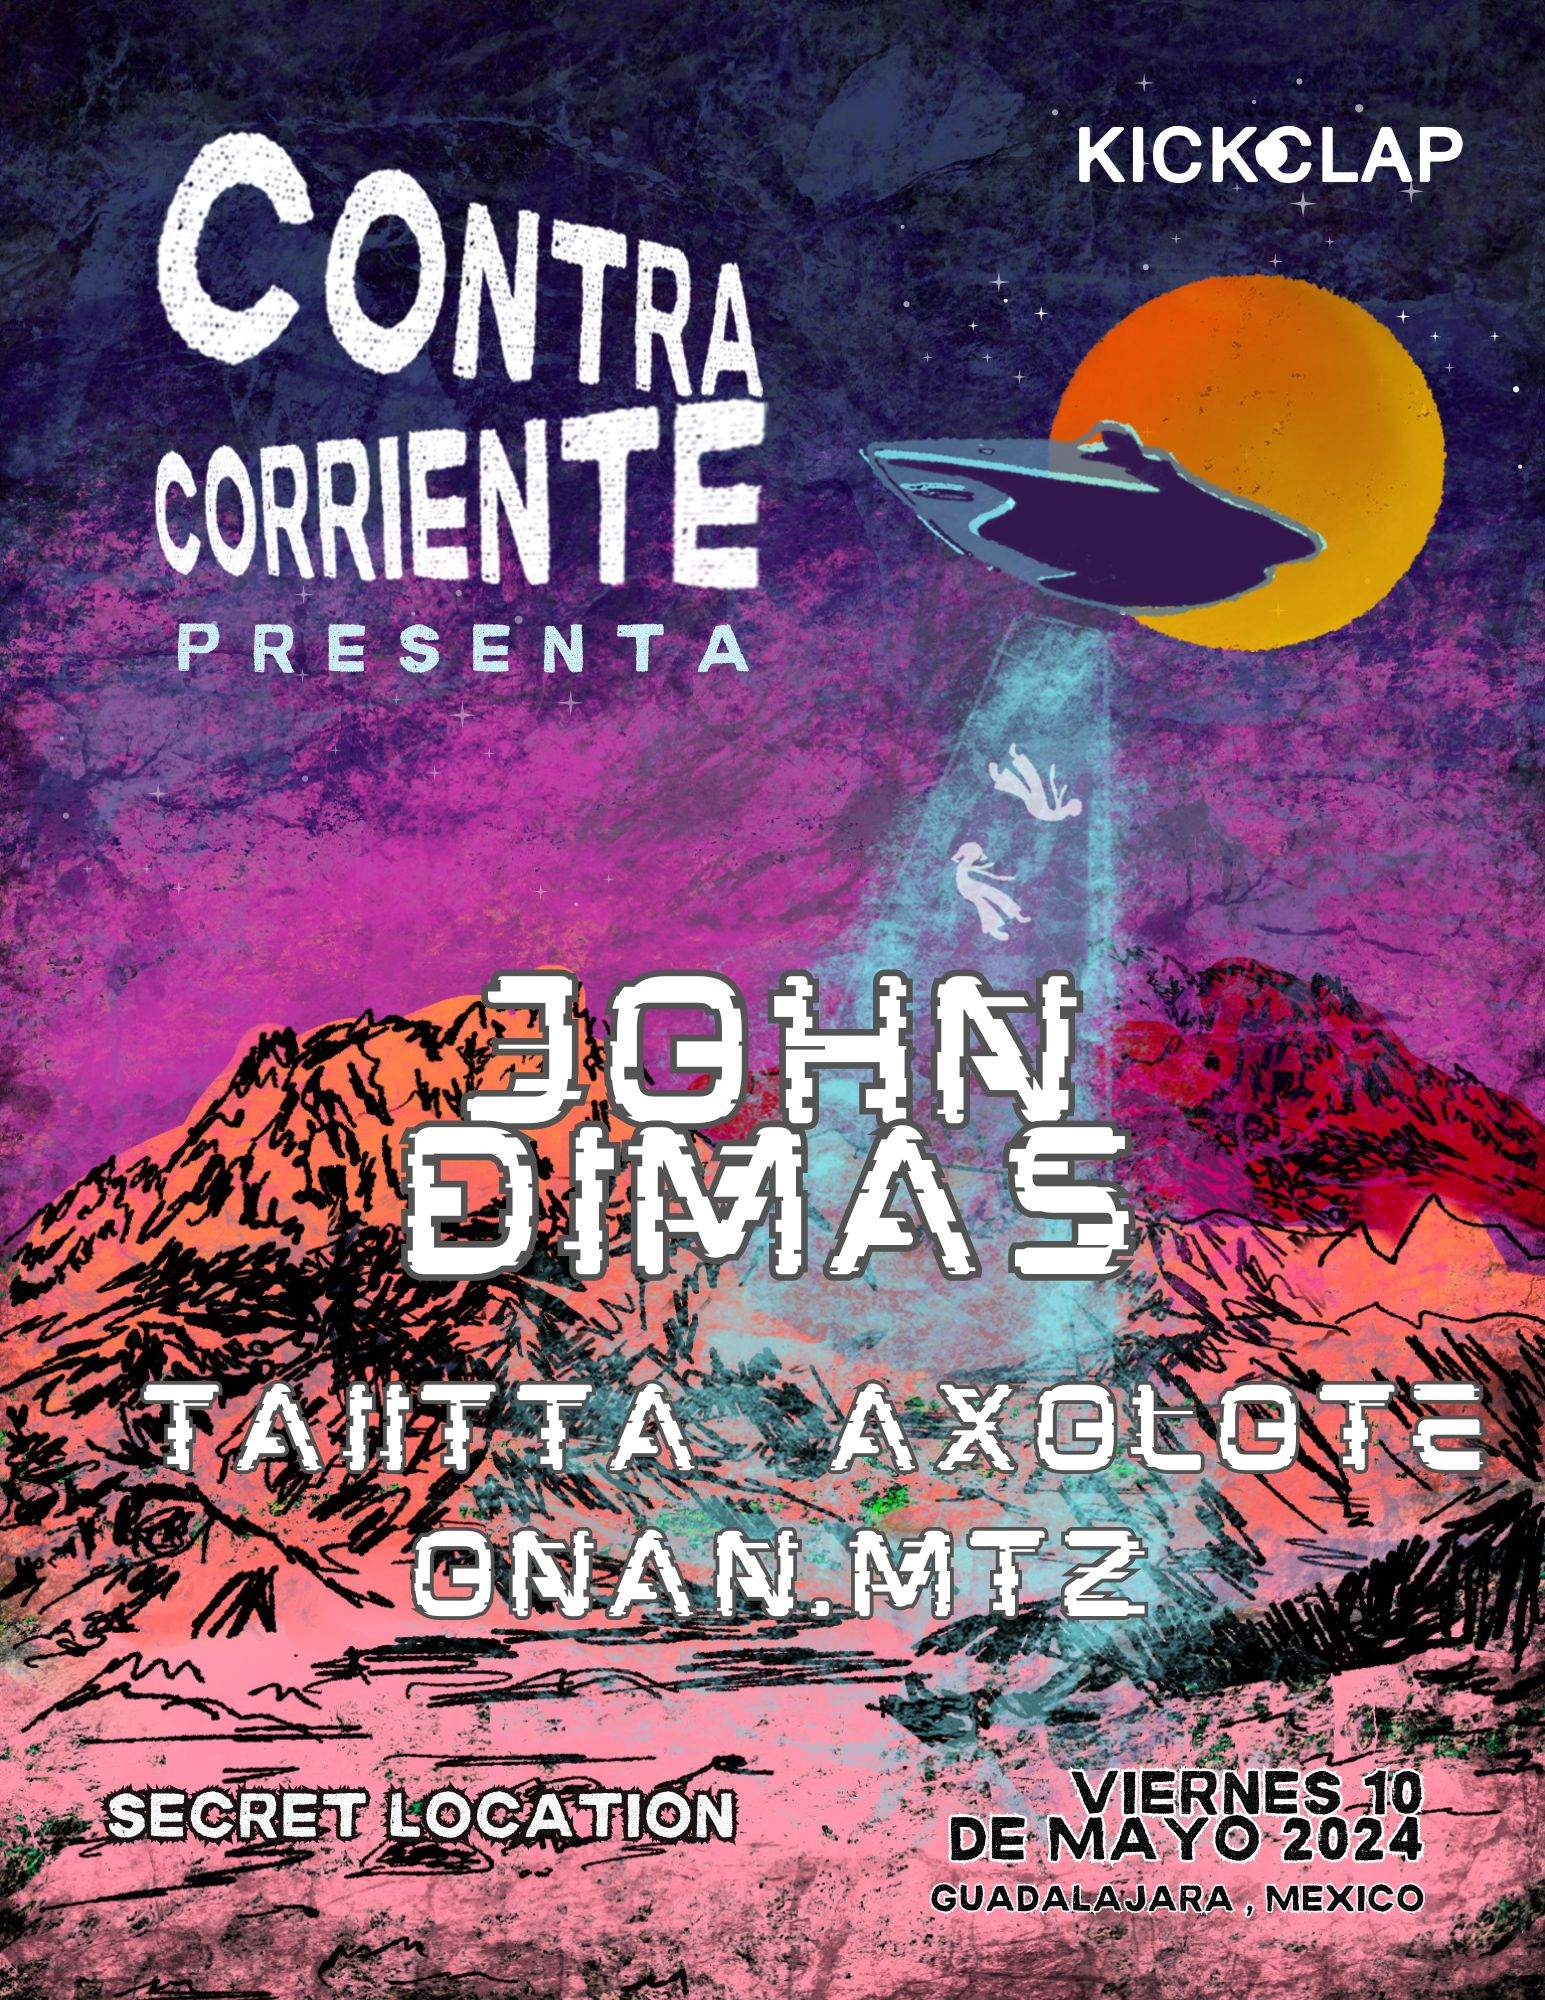 Contra Corriente presenta a John Dimas - フライヤー表